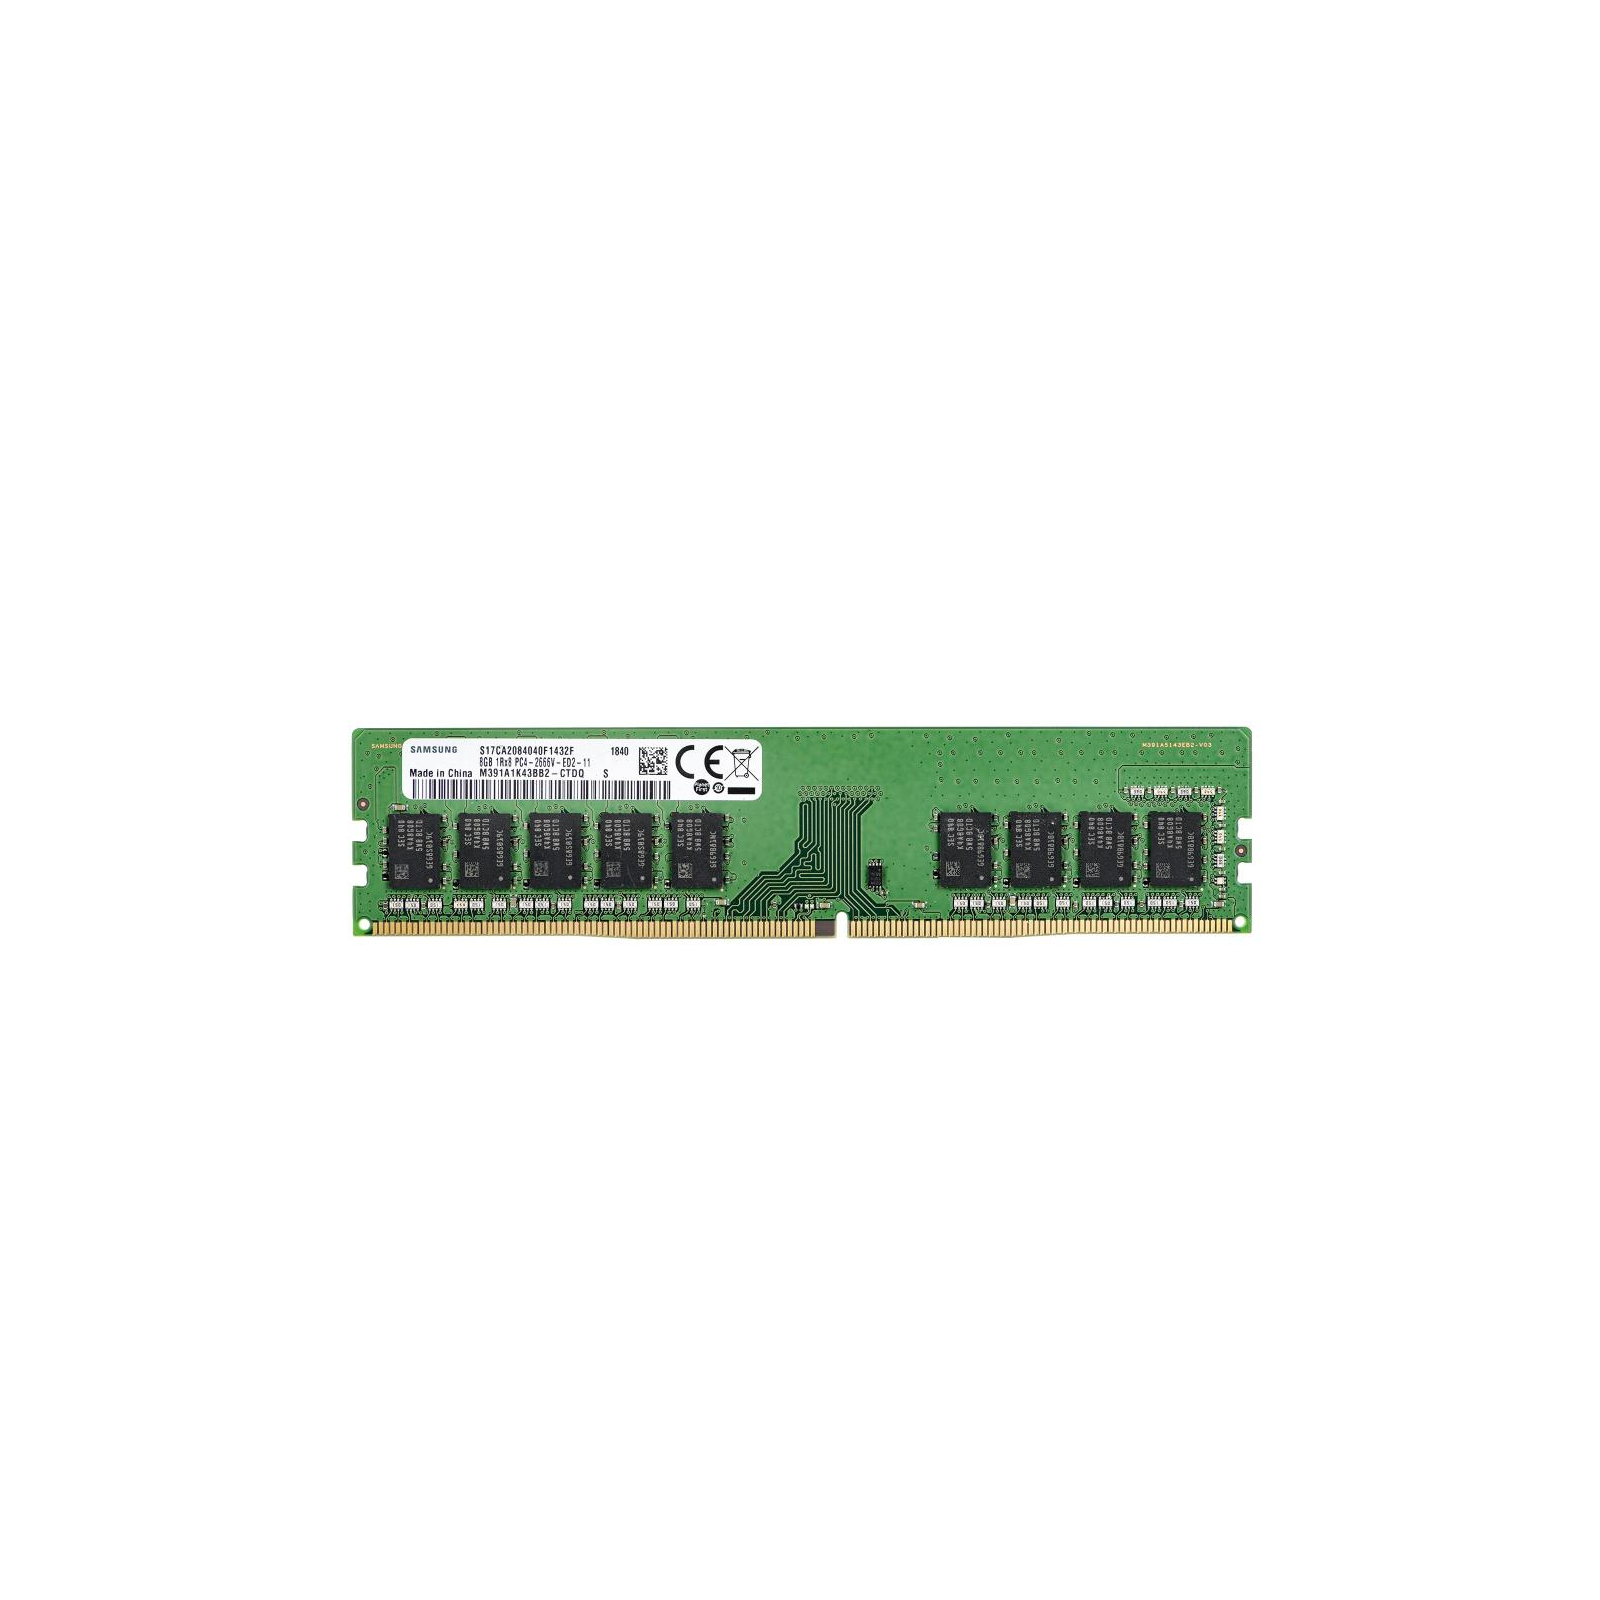 Модуль пам'яті для сервера DDR4 8Gb ECC UDIMM 2666MHz 1Rx8 1.2V CL19 Samsung (M391A1K43BB2-CTD)